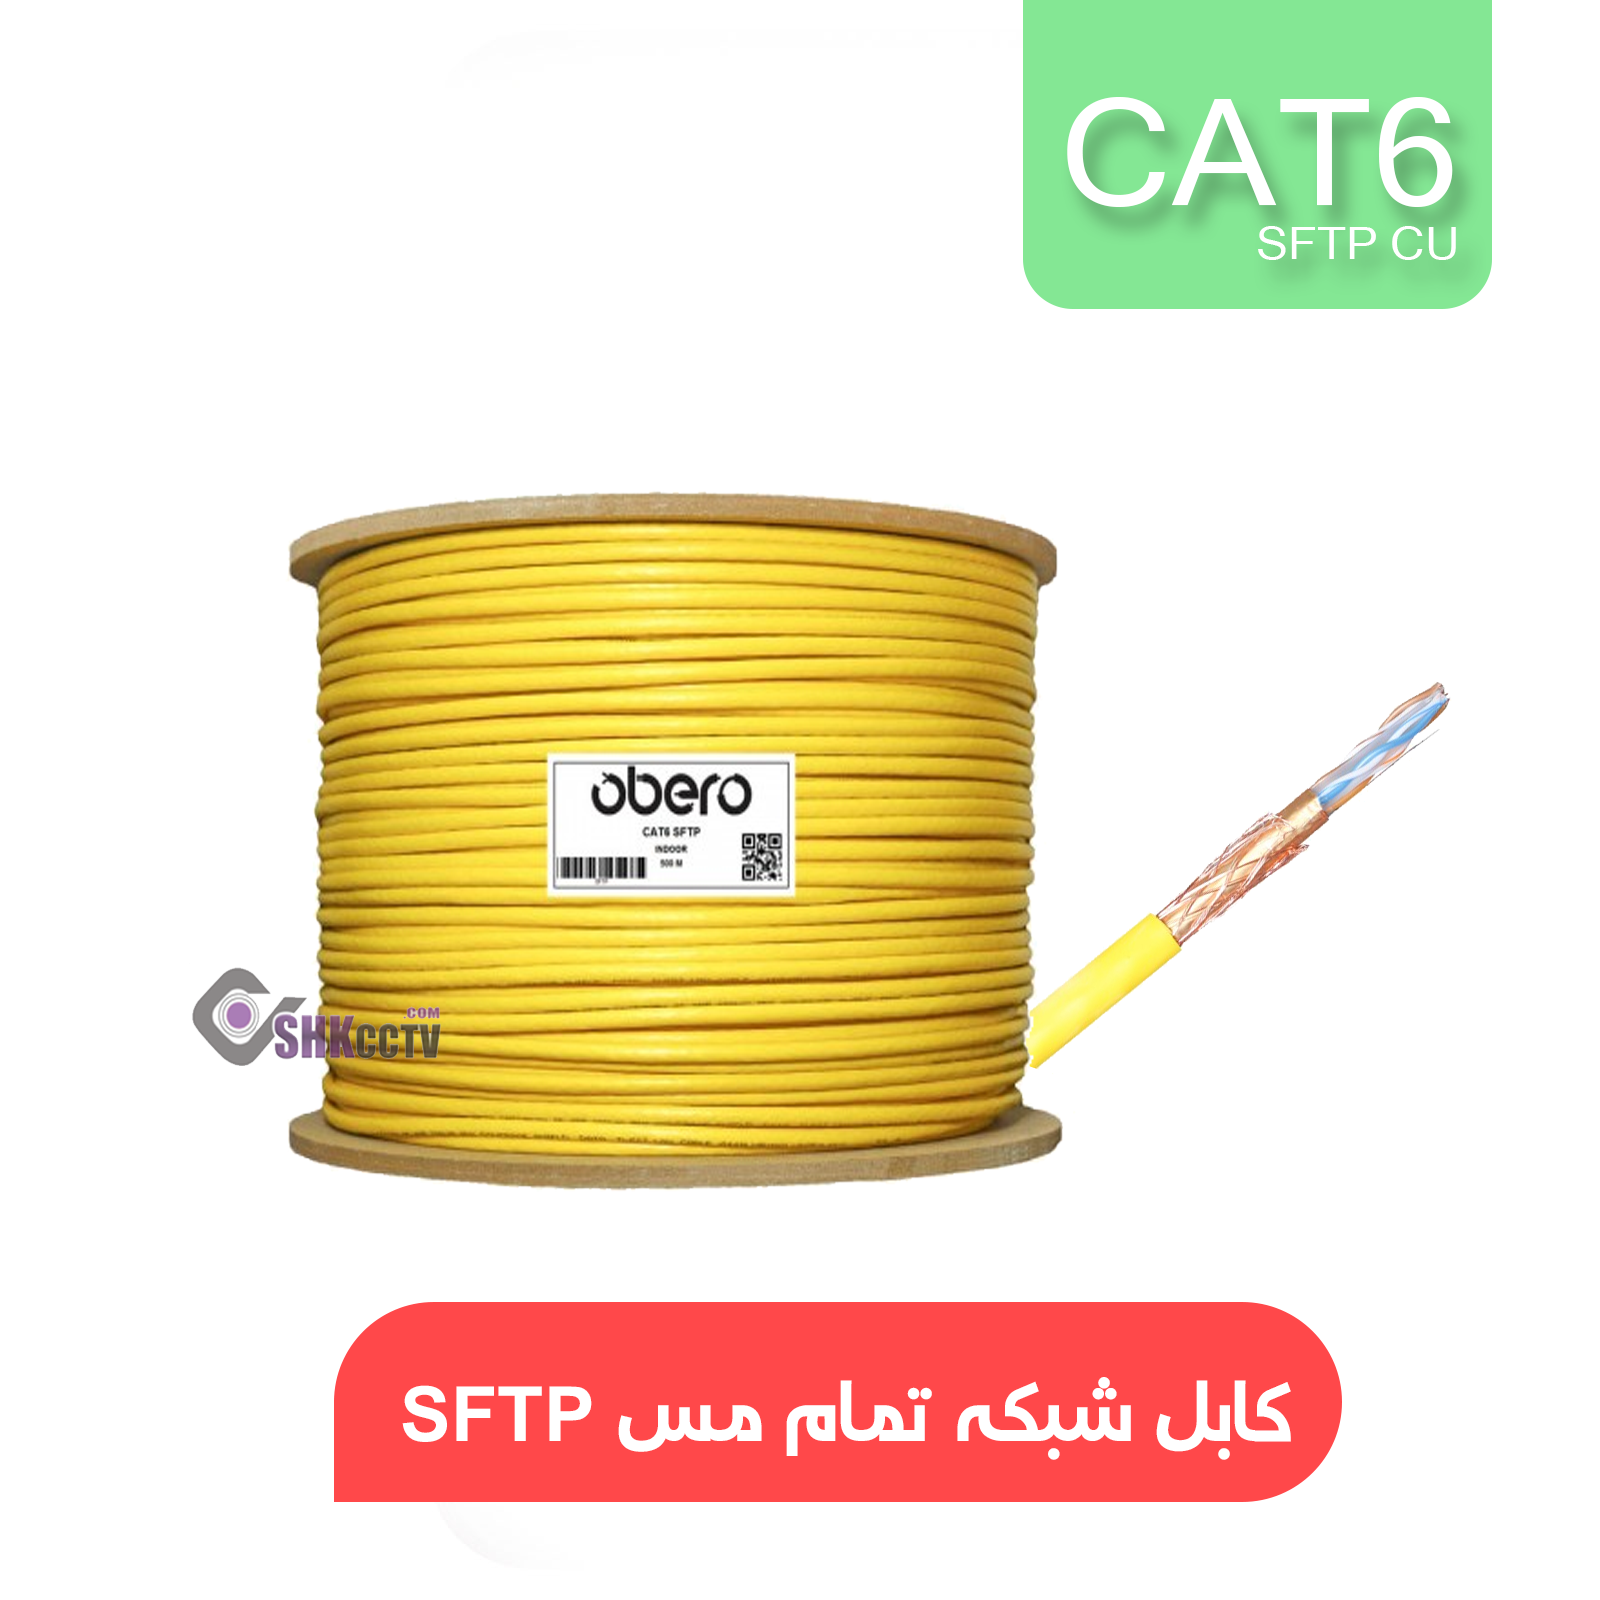 کابل شبکه SFTP CAT6 CU Obero